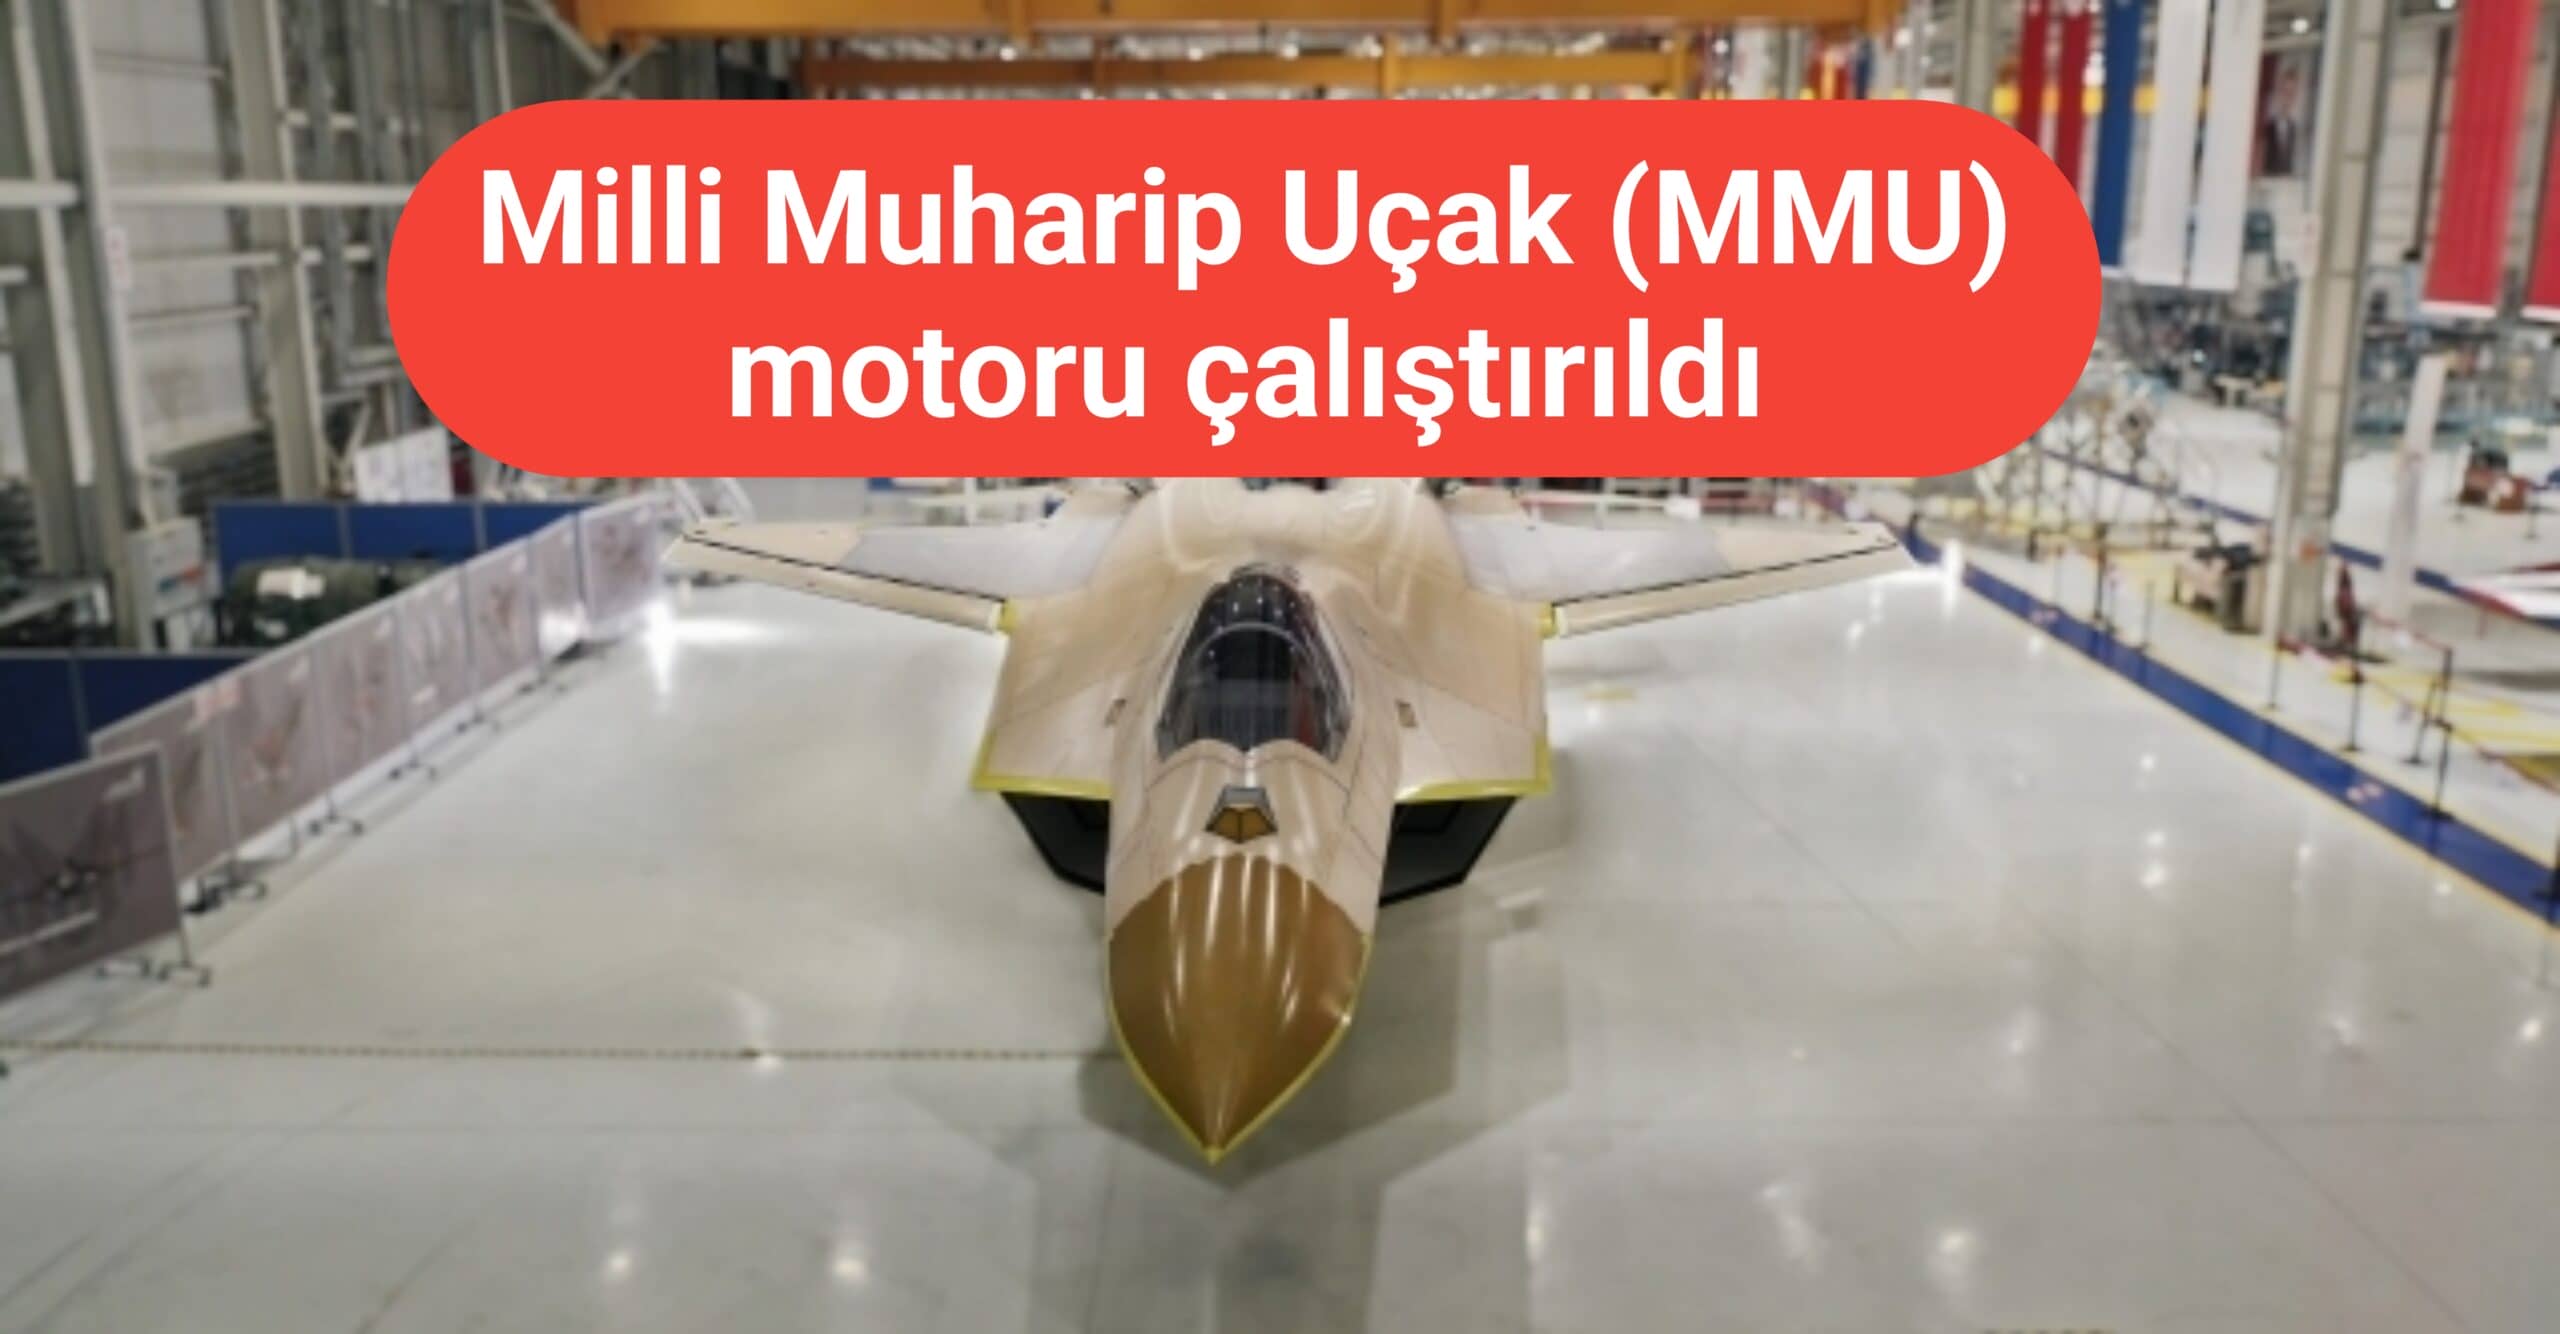 Milli Muharip Uçak'ın (MMU) motoru çalıştırıldı